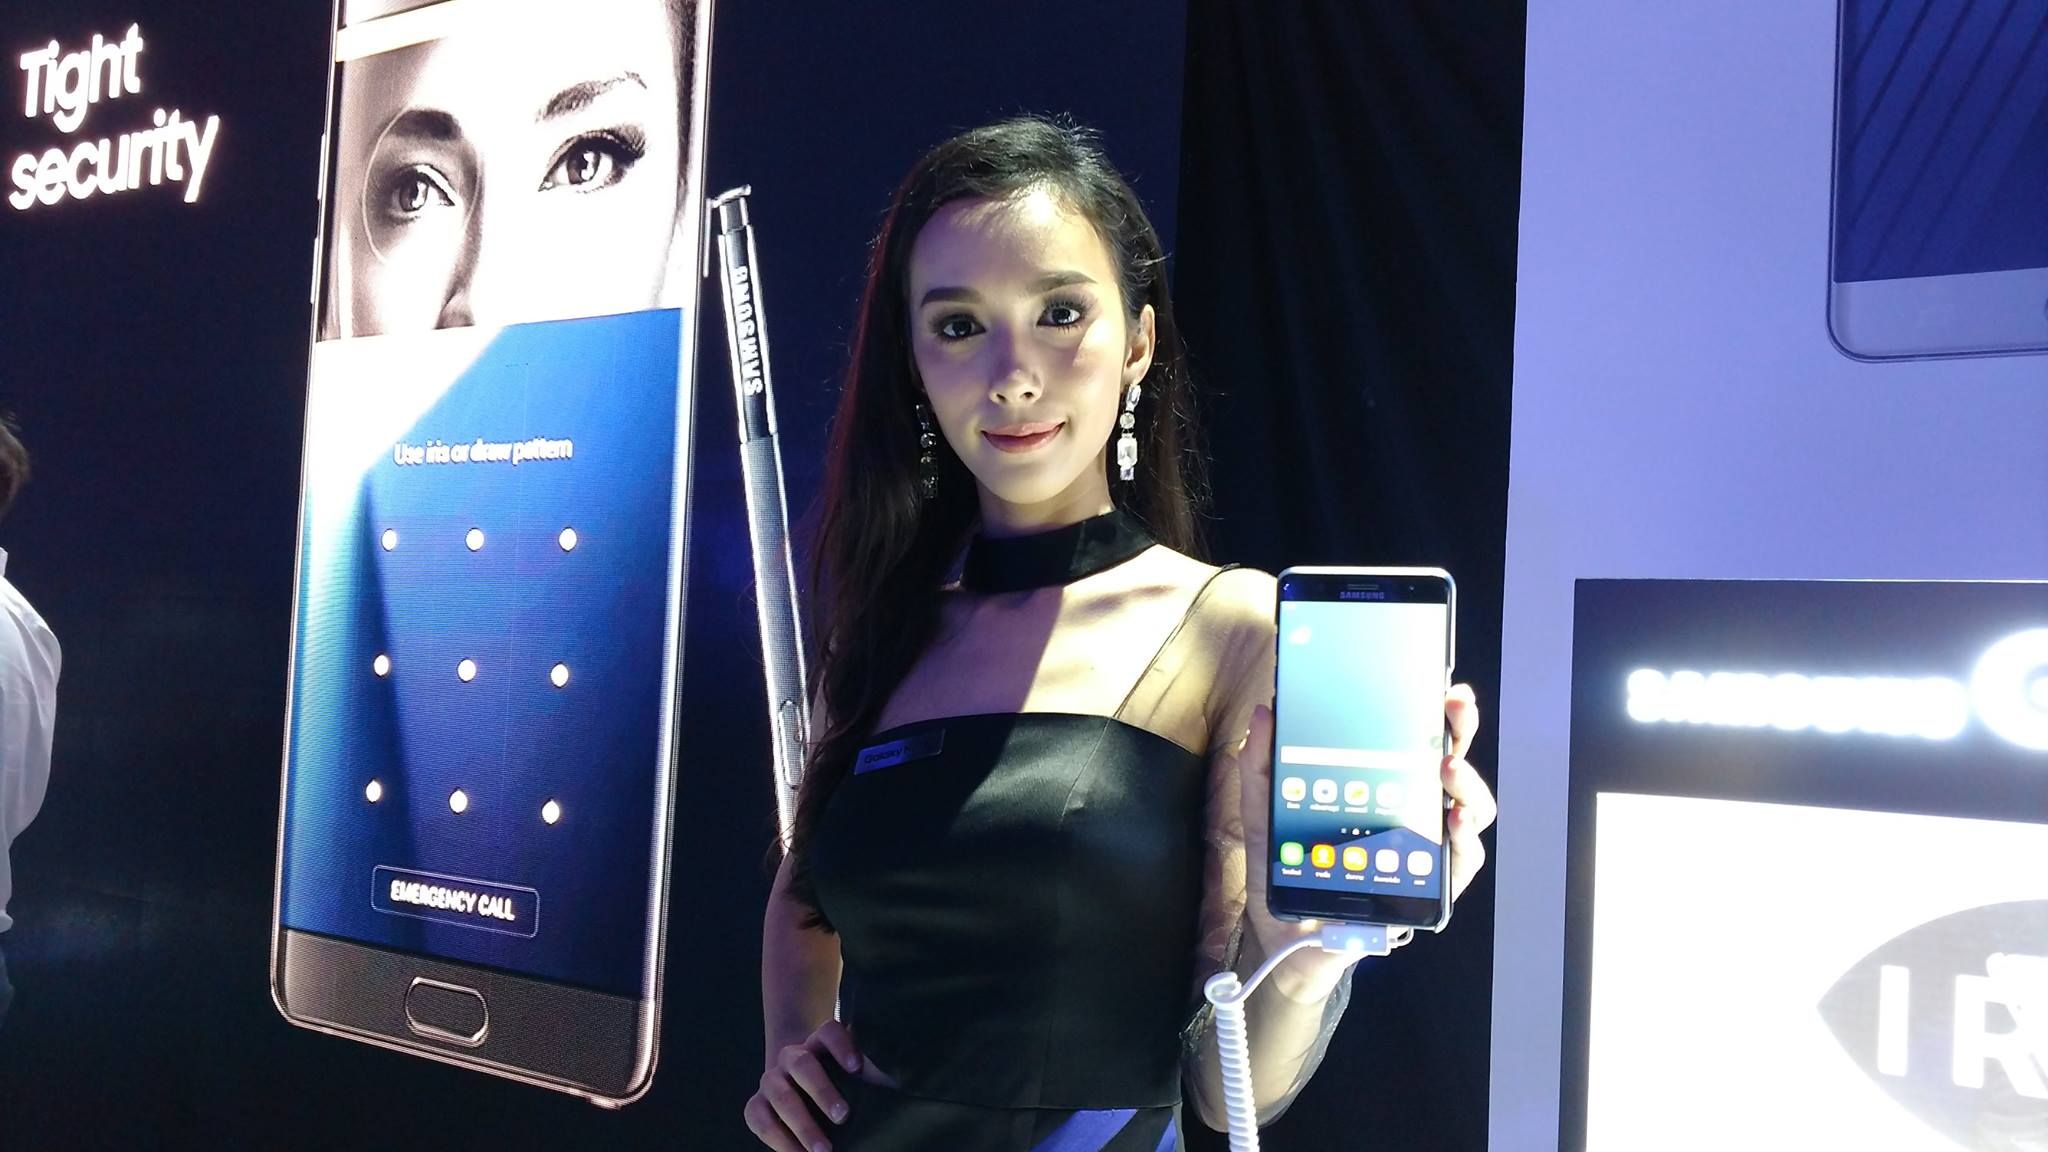 ประกาศวันวางจำหน่าย Galaxy Note 7 ในประเทศไทยอย่างเป็นทางการ เจอกันทุกร้านวันที่ 9 เดือน 9 ใครสั่งจองได้ของก่อน